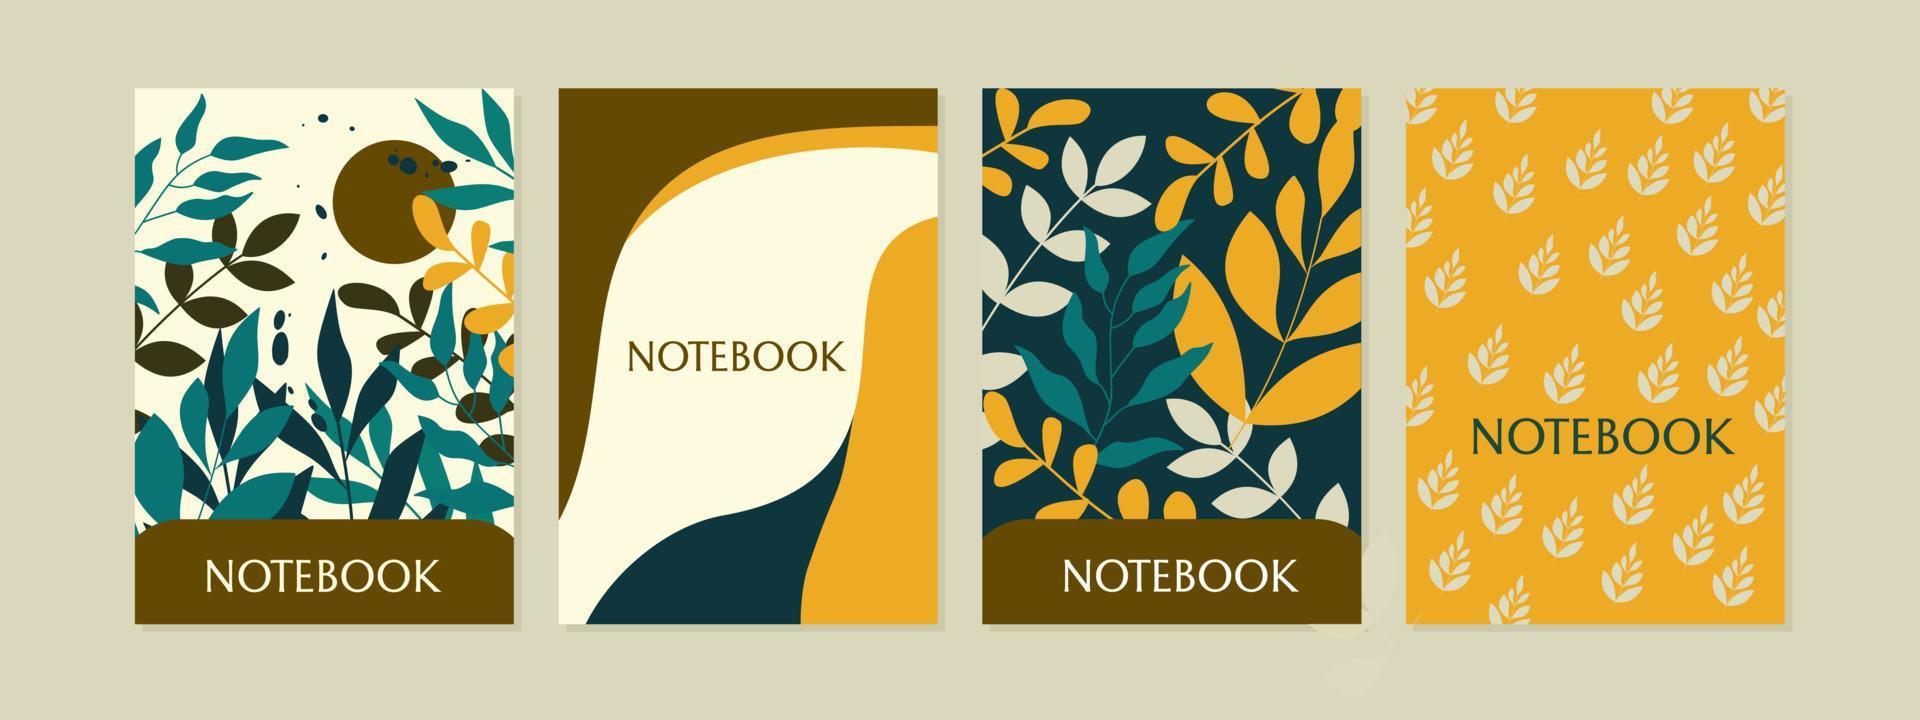 modelos de capa de caderno. layouts universais. design botânico abstrato. para planejadores, folhetos, diário, livros, catálogos vetor